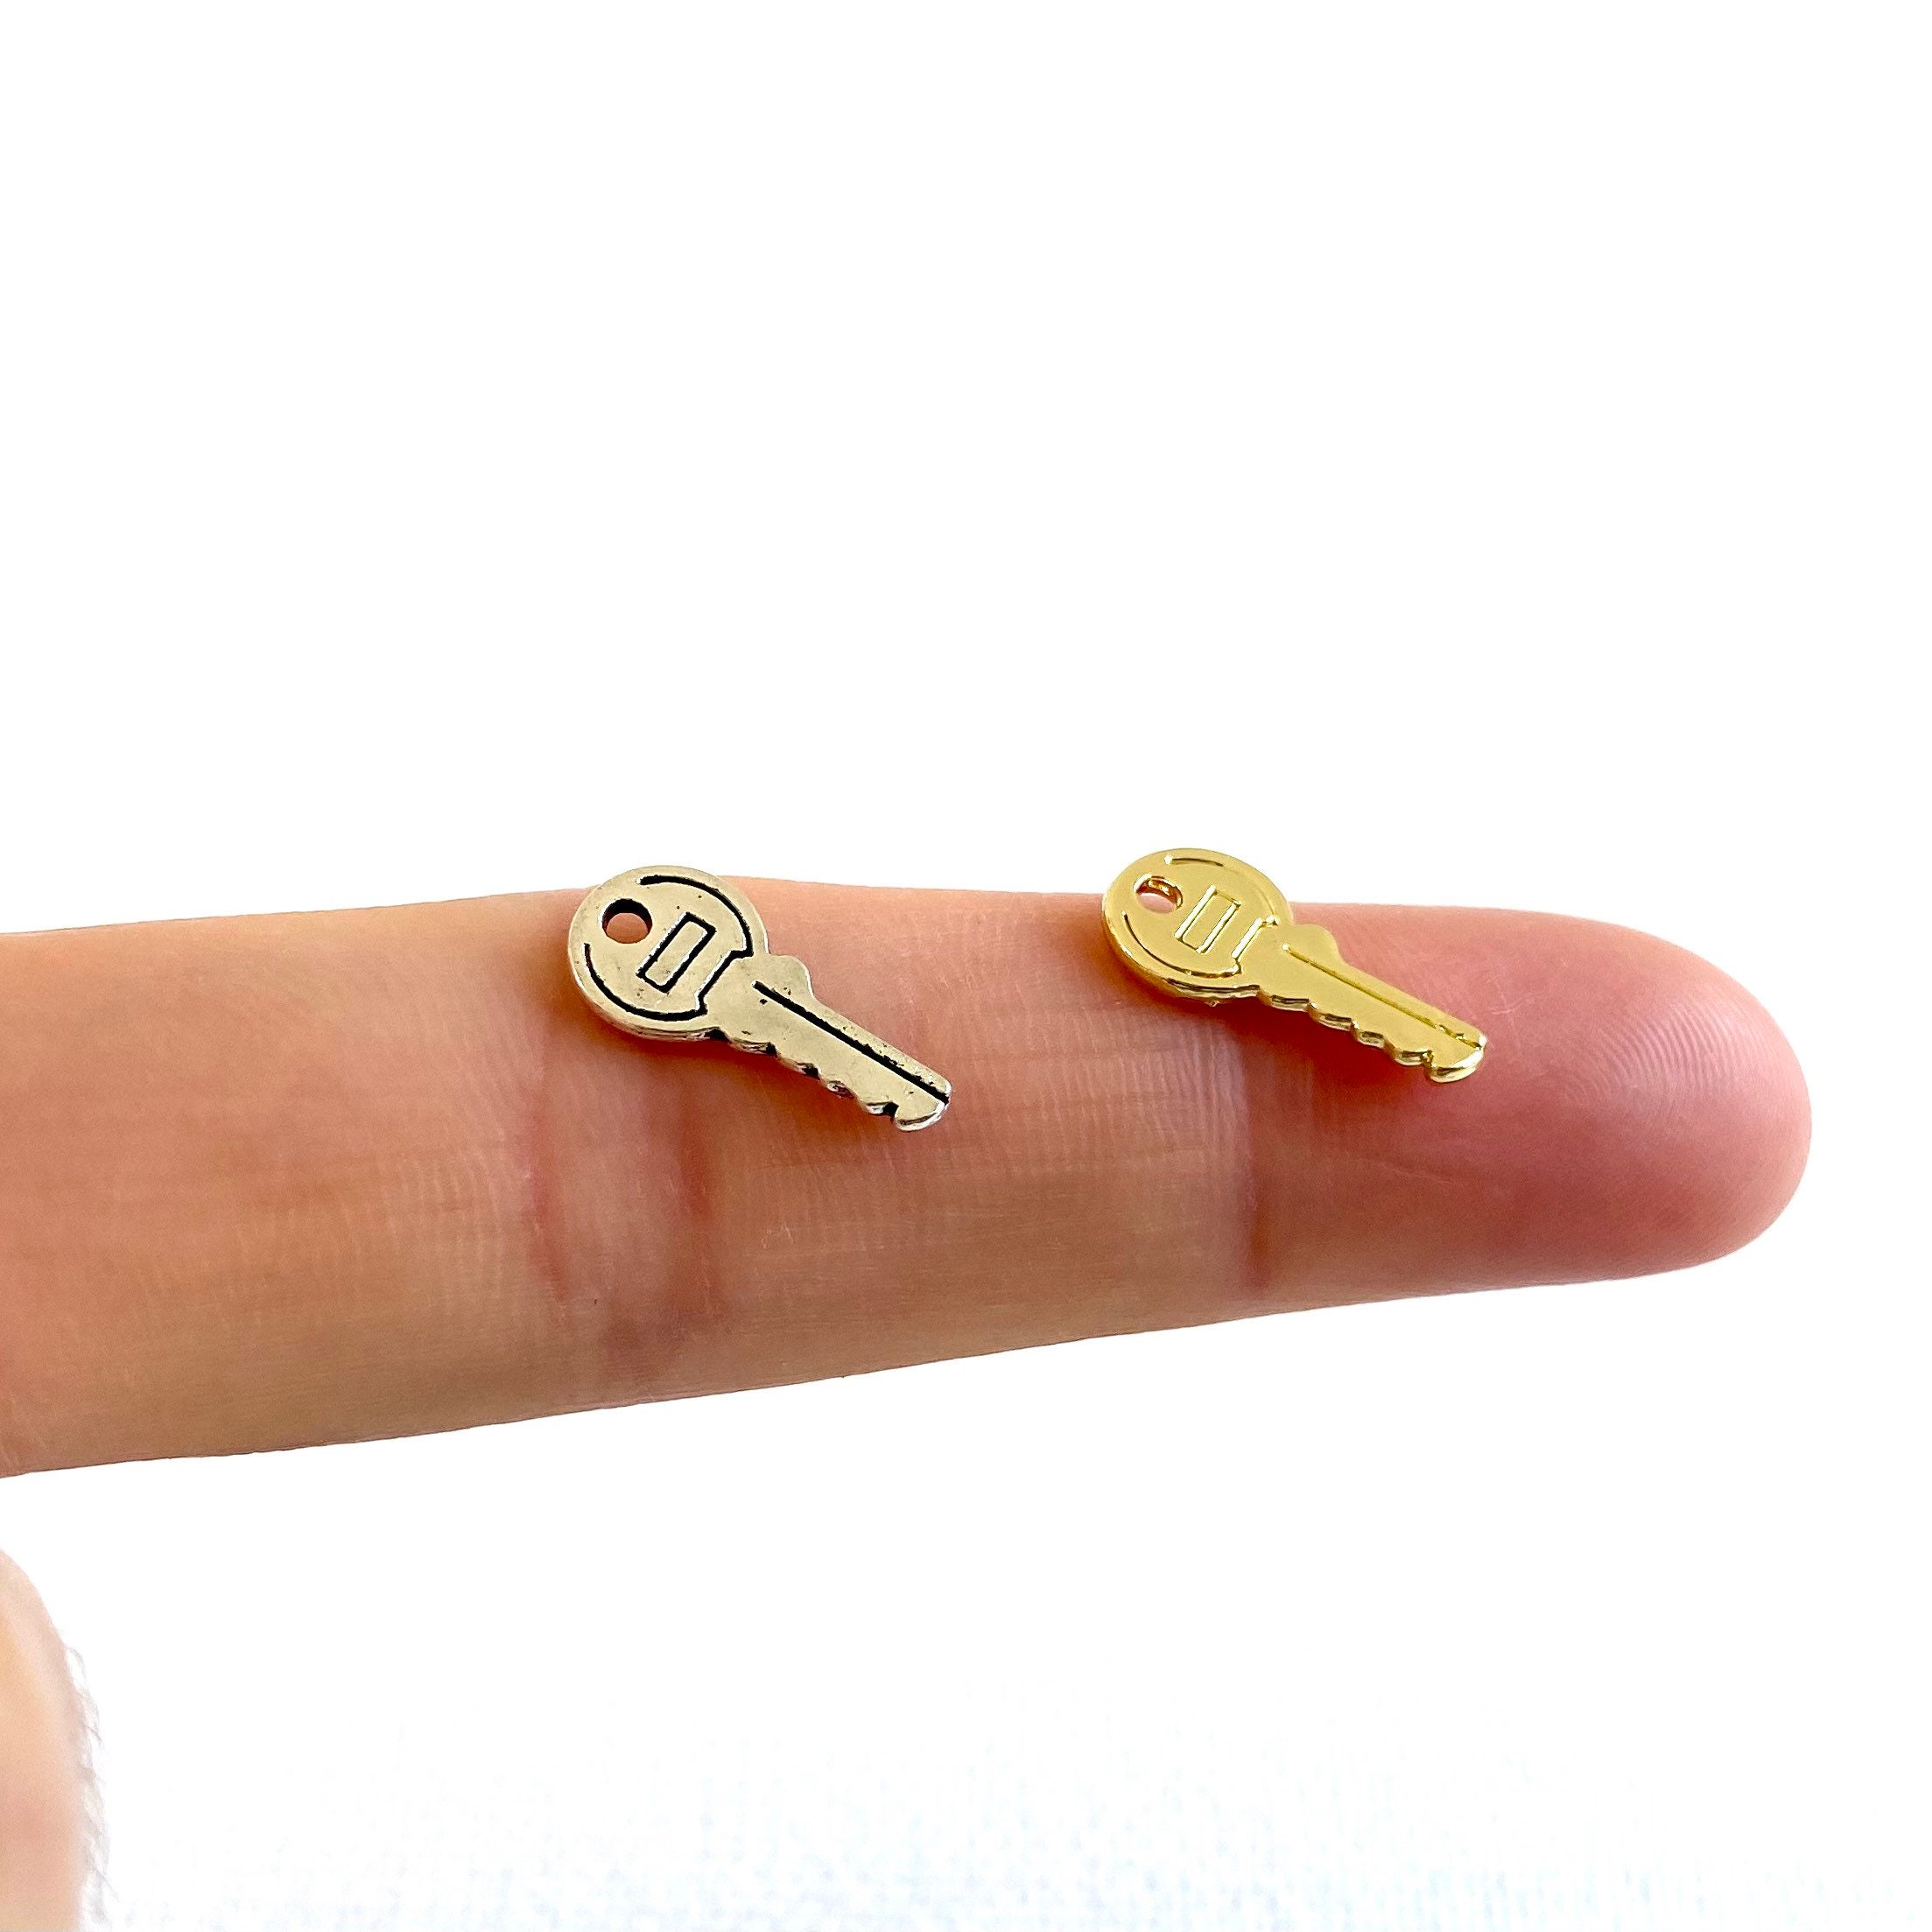 200pcs of 10mm Tiny Key Rings Gold and Light Gold Split Rings Key